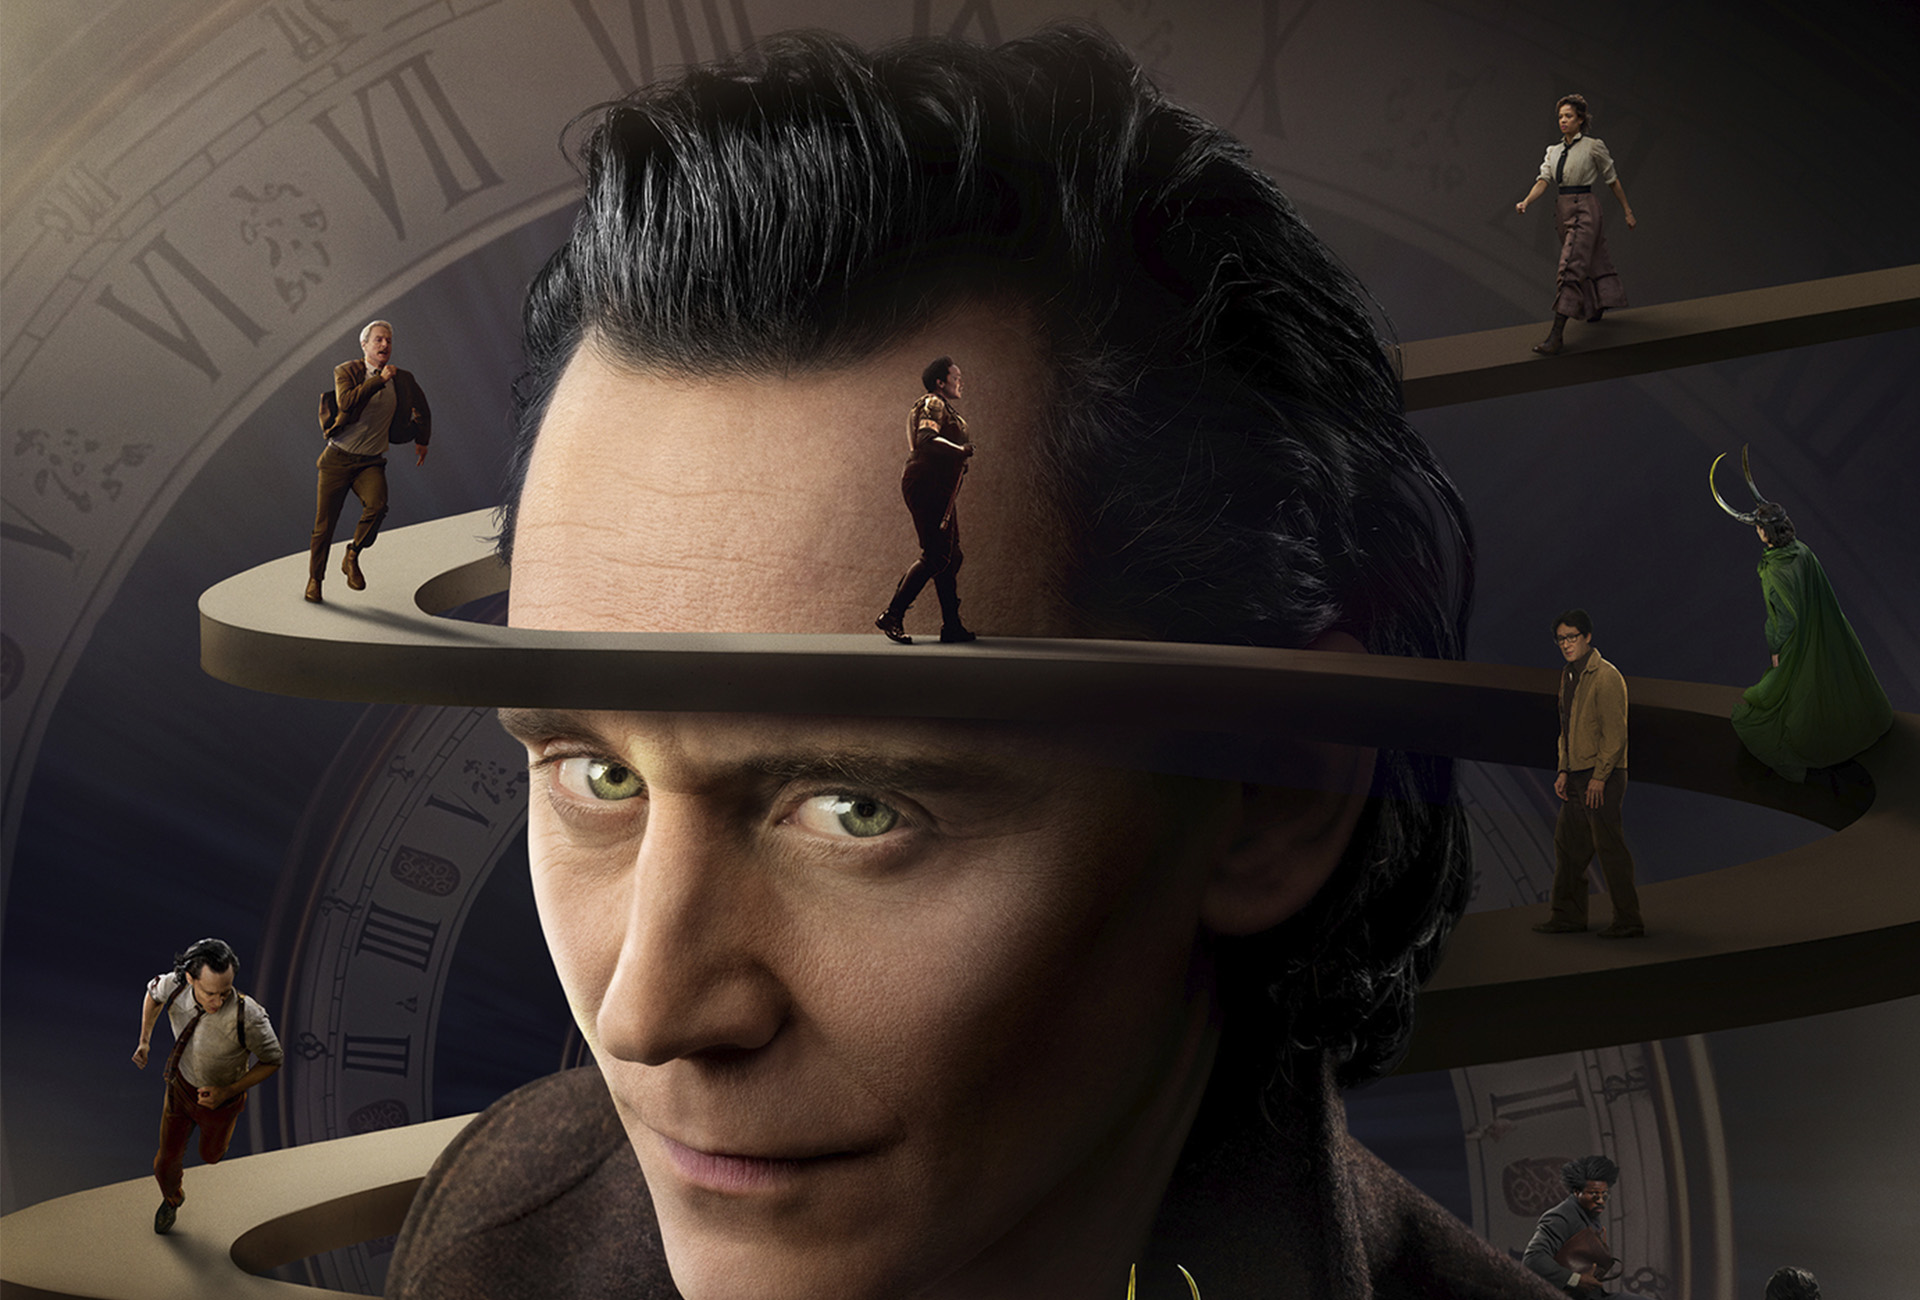 Artyści skrytykowali Disneya za możliwe wykorzystanie sztucznej inteligencji w plakacie "Loki" (Loki)